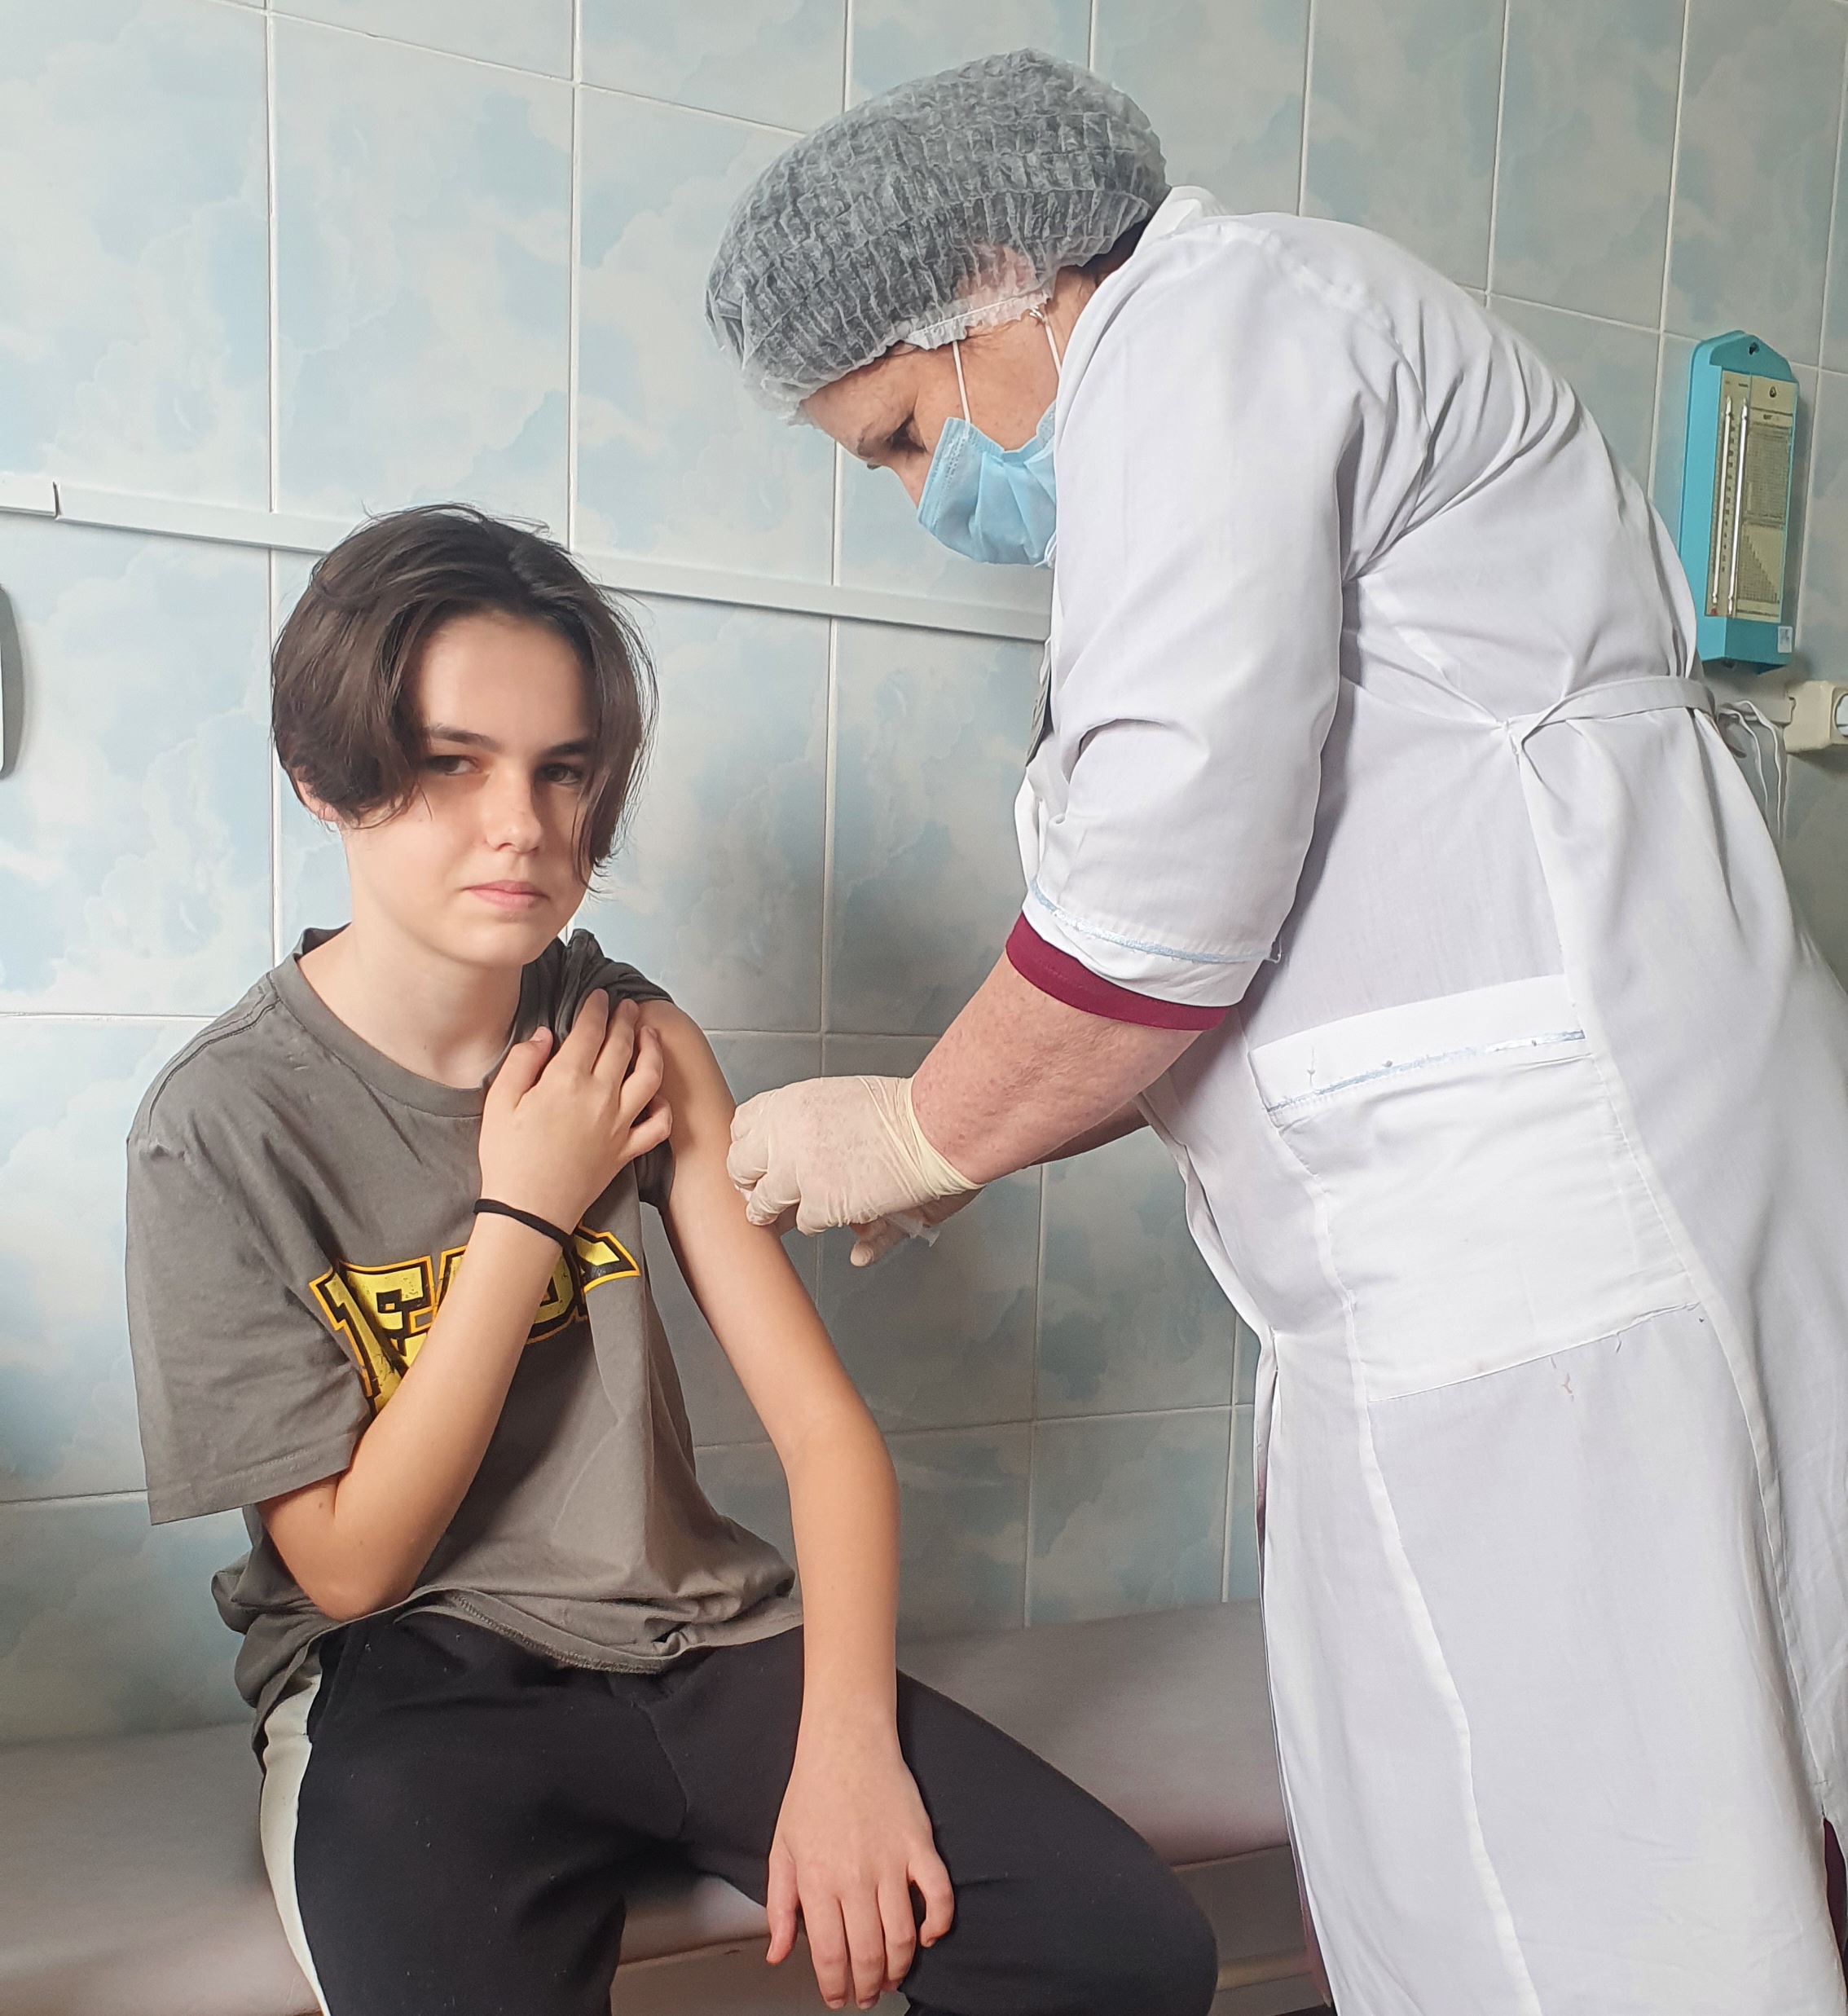 Добровольно бесплатно – вакцинация подростков